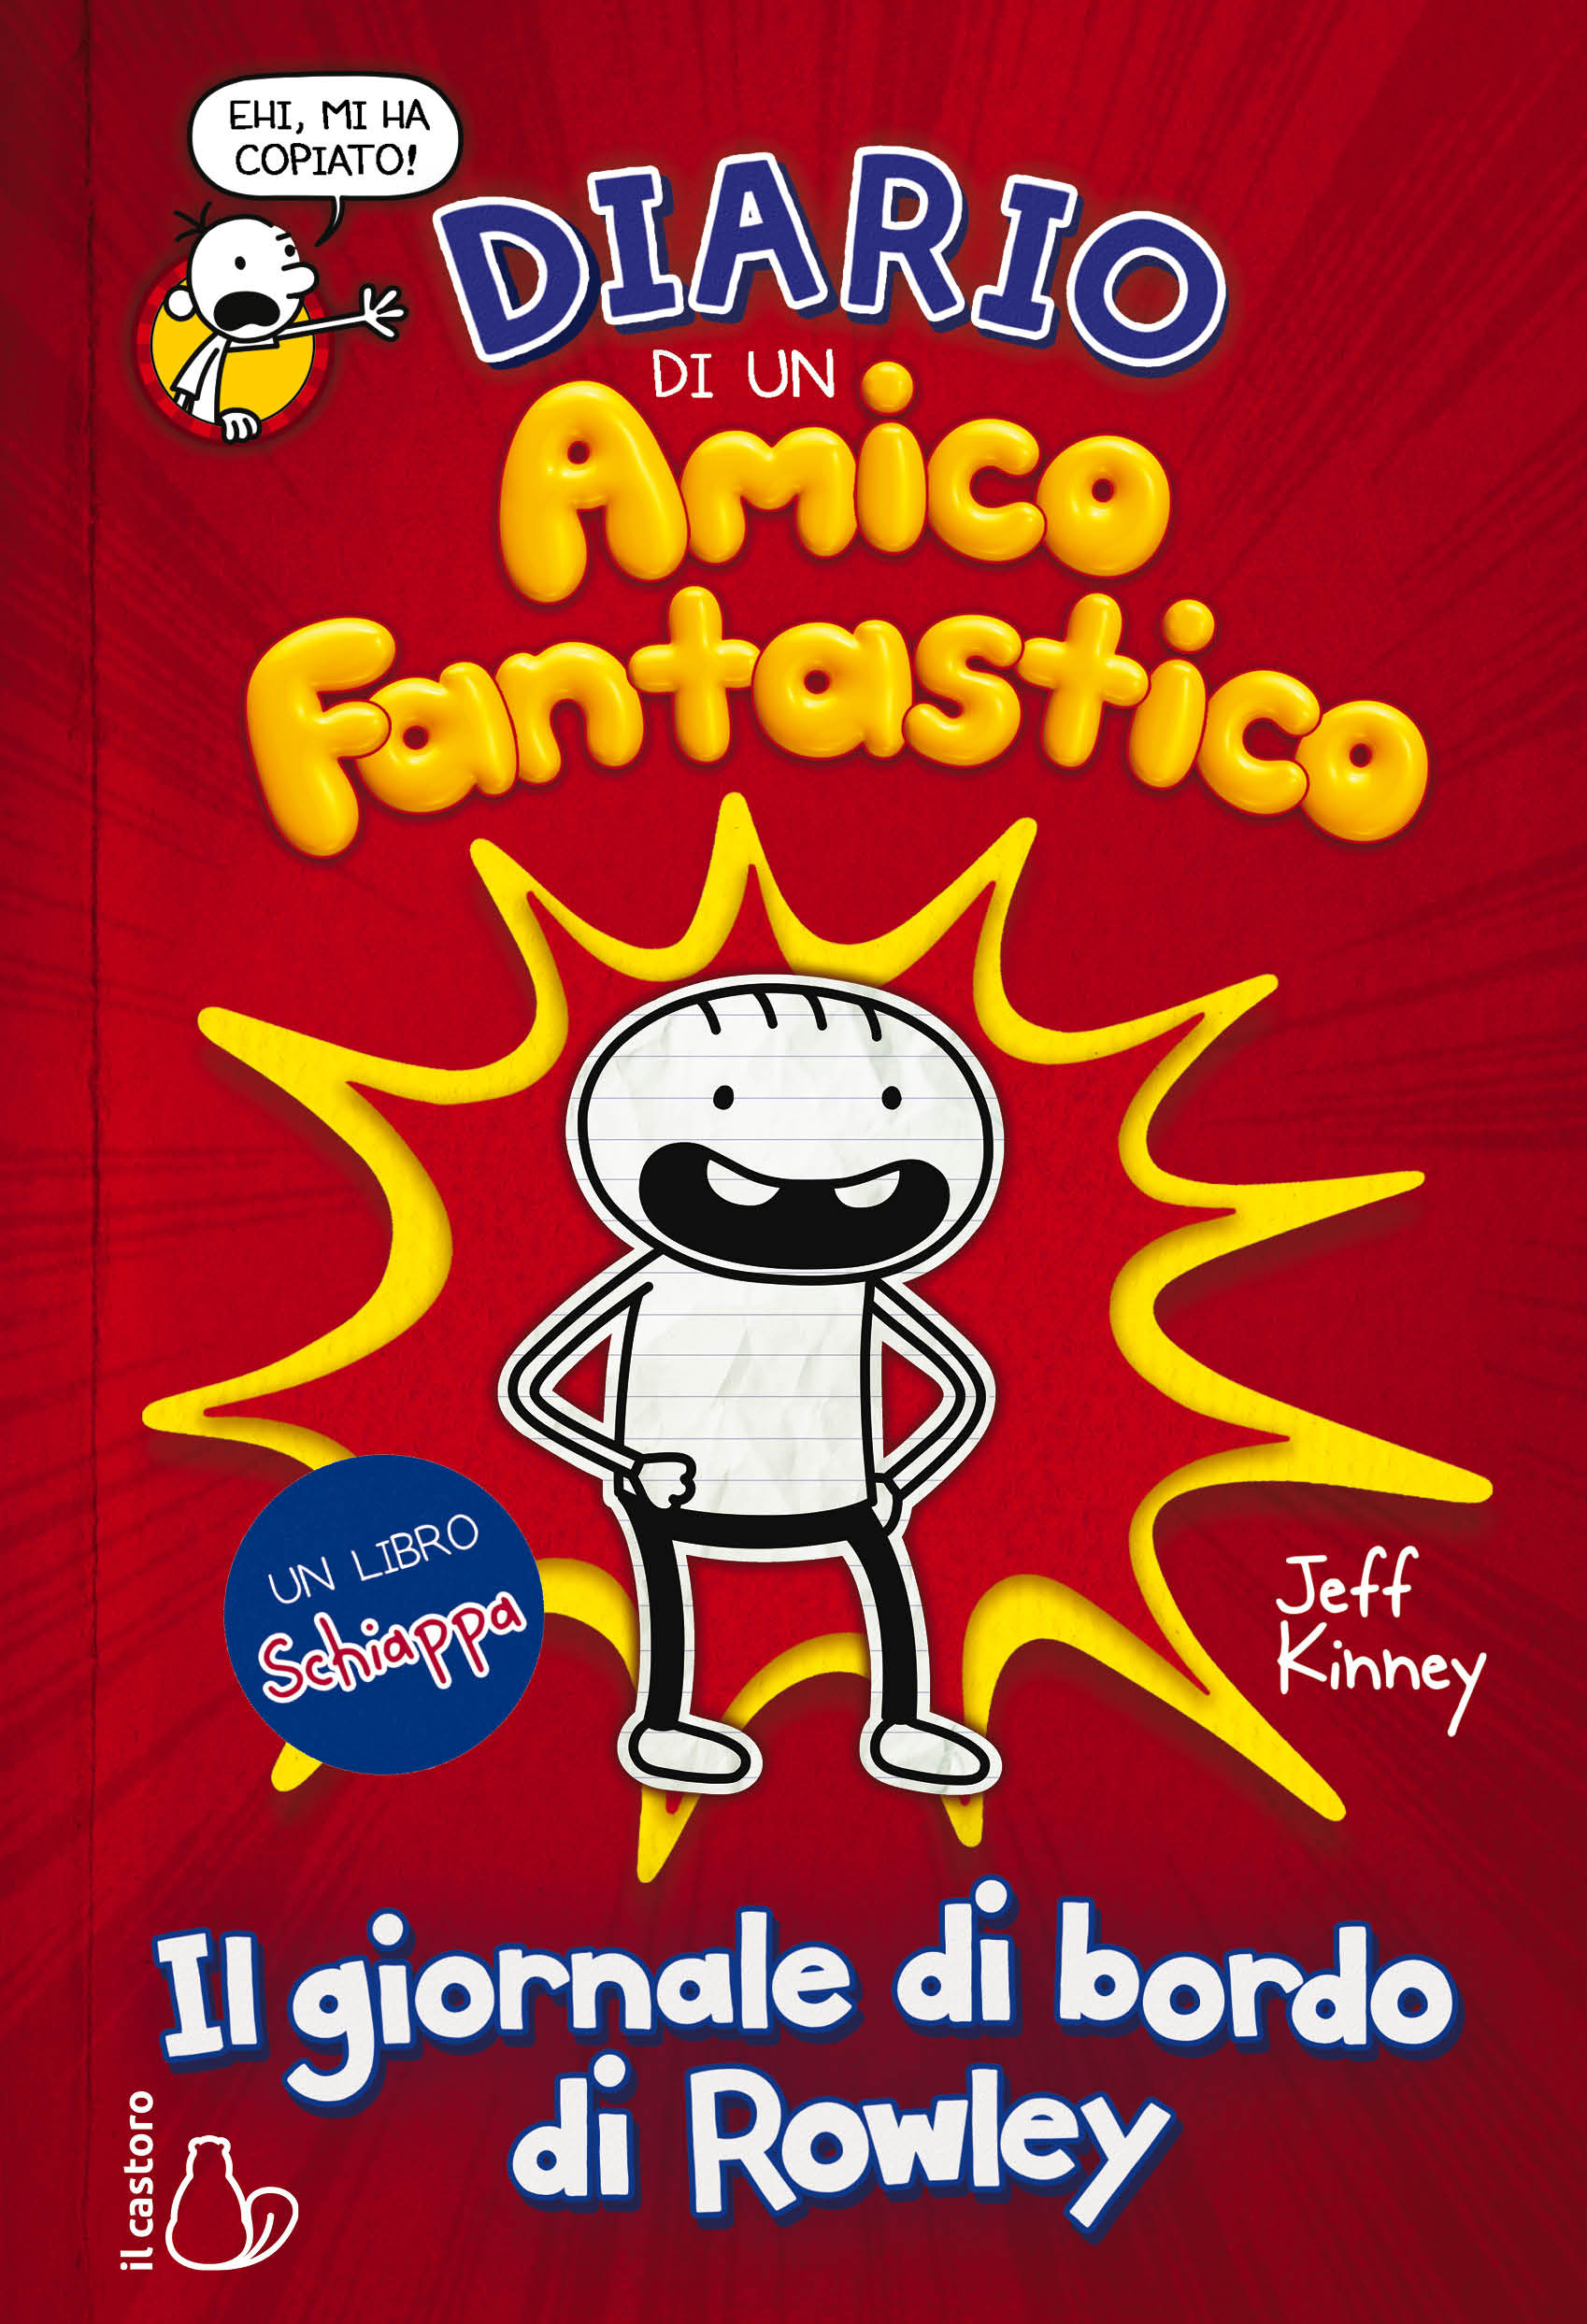 Diario di un Amico Fantastico: il nuovo libro di Jeff Kinney arriva in Italia thumbnail